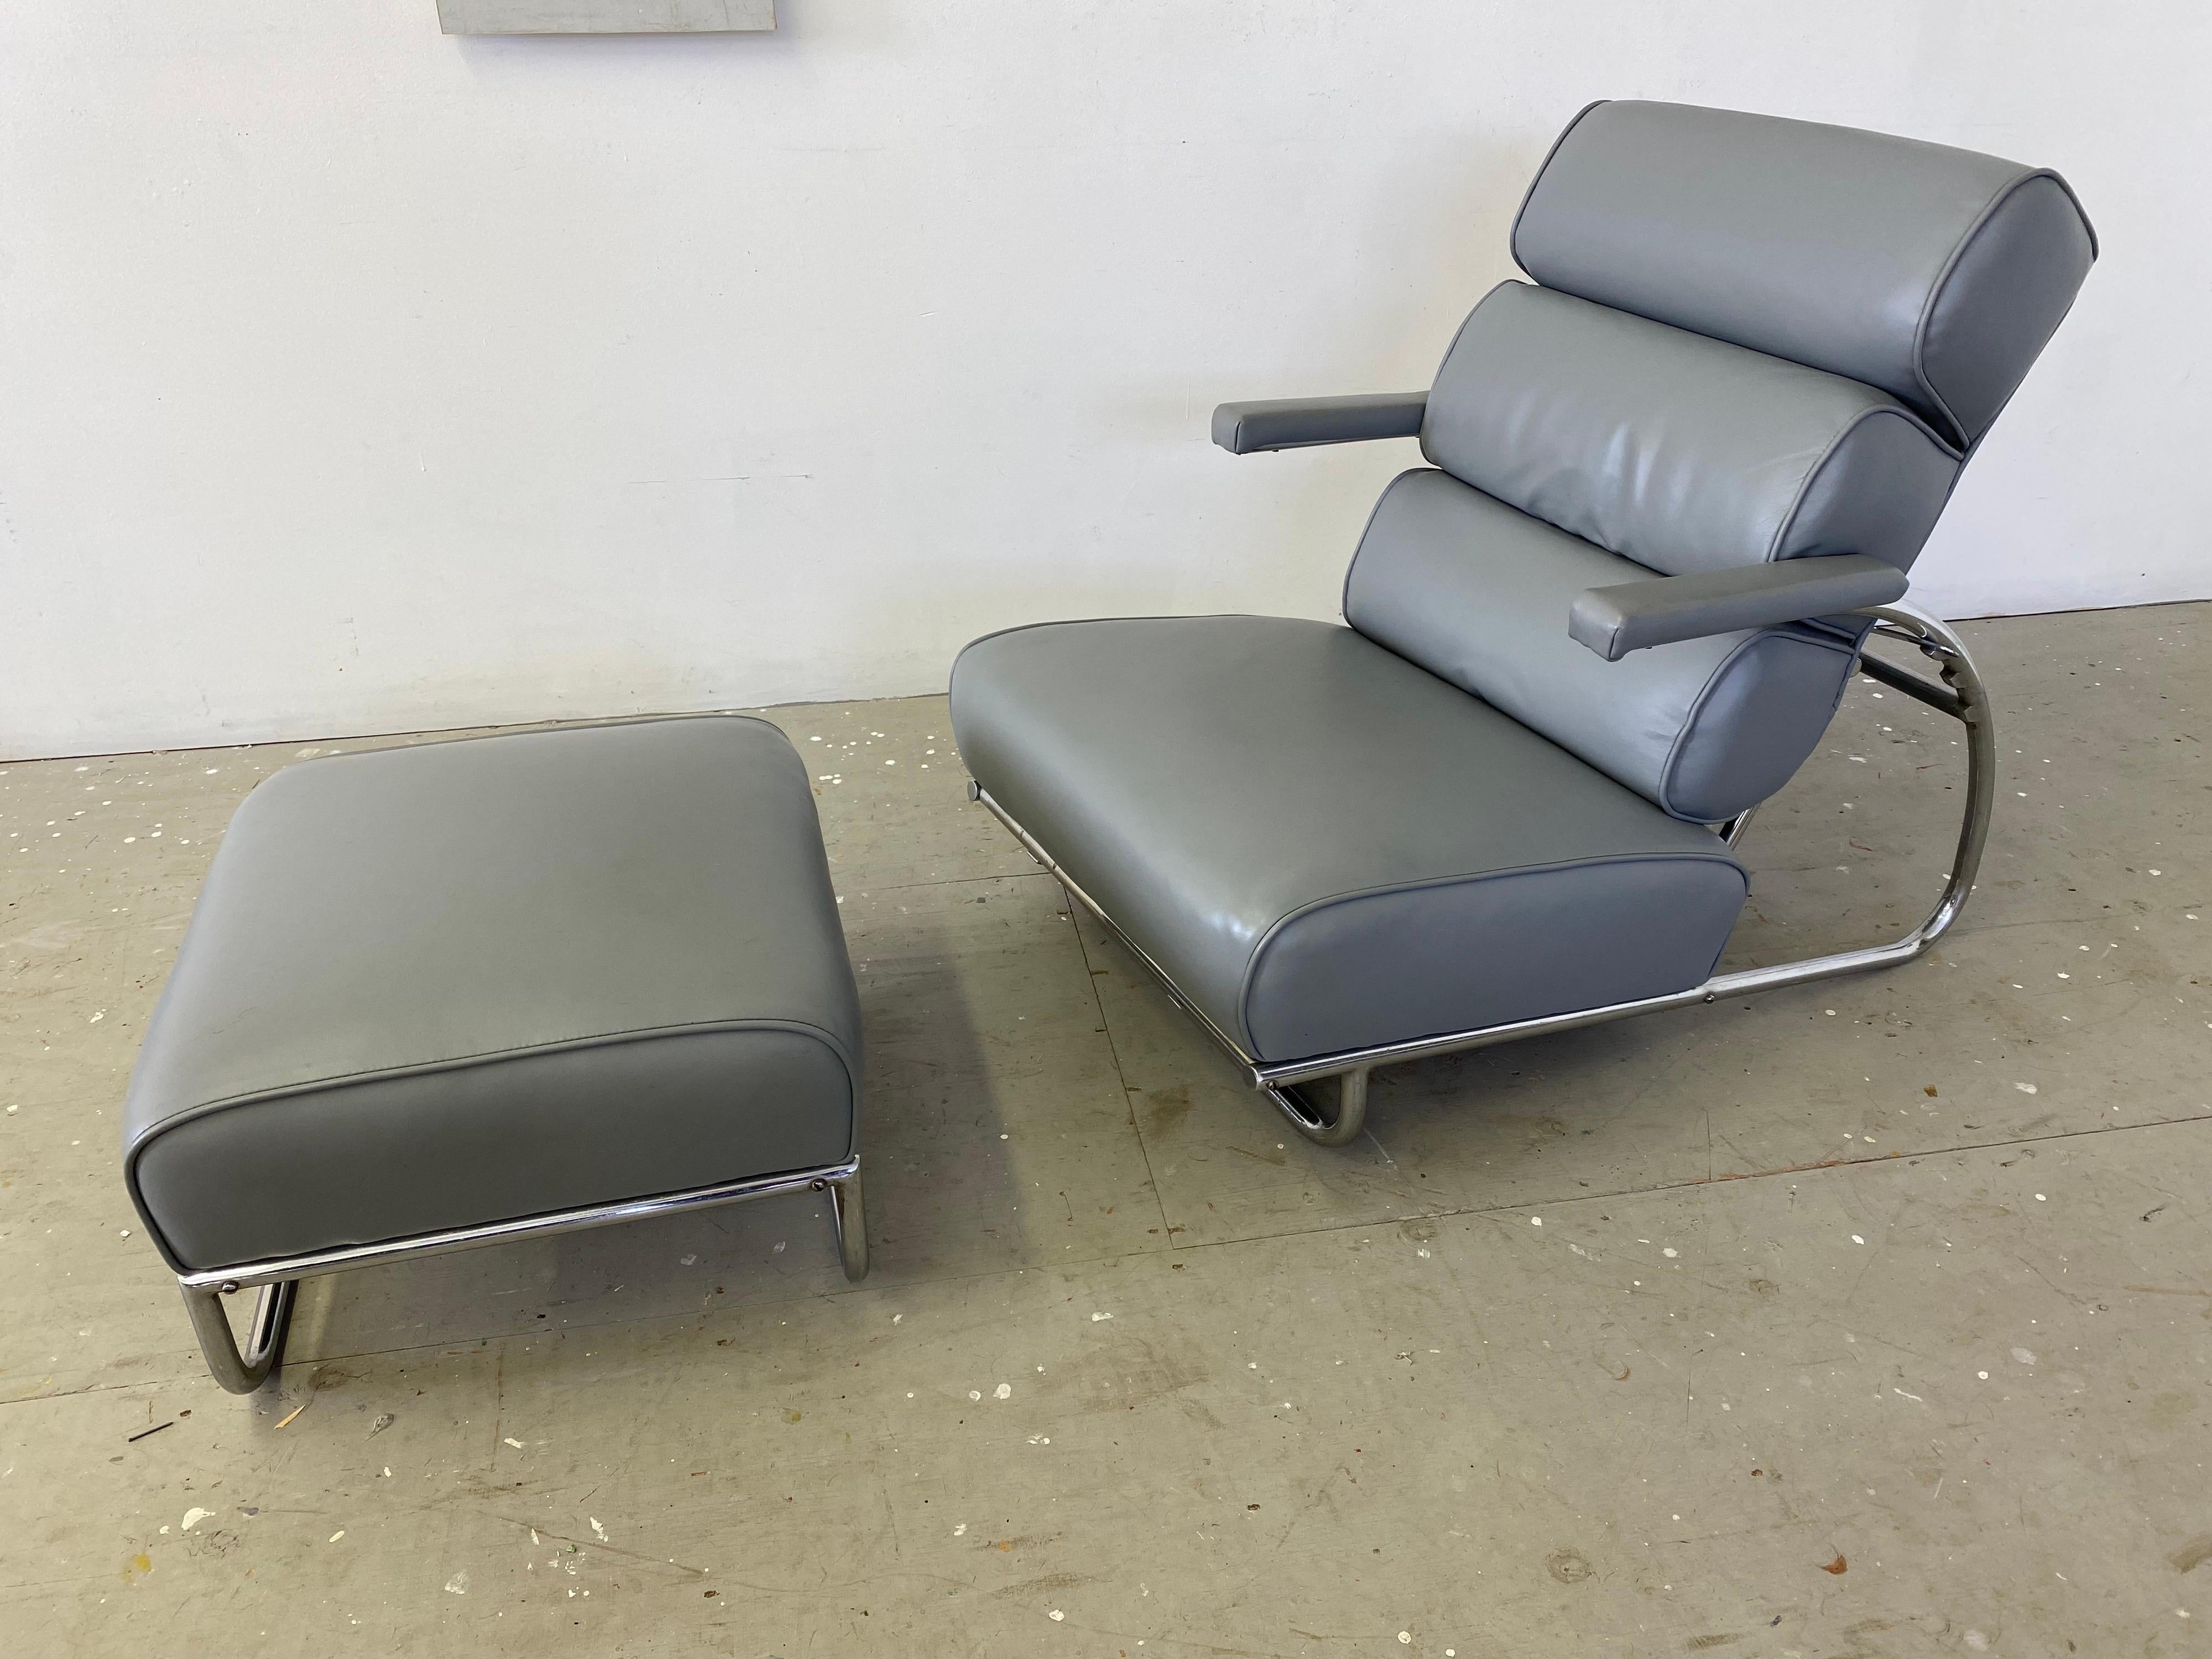 Gilbert Rohde für Troy Sunshade Chrom und Leder 3 Position Lounge Chair. Rohde hat einige seiner erstaunlichsten Designs für Troy Sunshade entworfen. Dieses frühe Exemplar wurde 1934 entworfen, spätere Modelle hatten mehr Gelenke und Schrauben, die